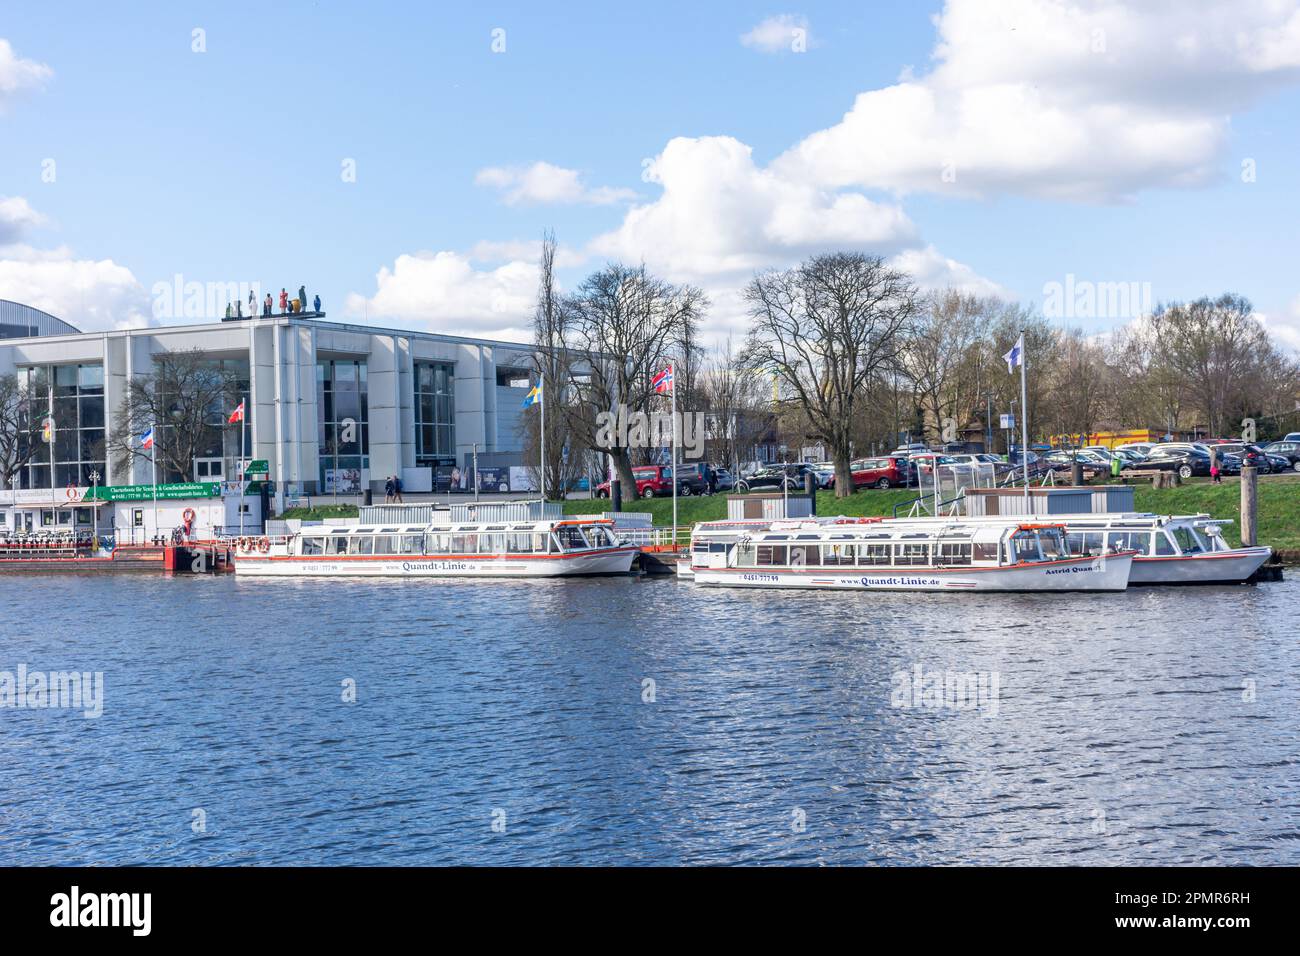 Musik und Kongresshalle (lieu des événements) et bateaux de croisière fluviaux à travers la rivière Trave, Lübeck, Schleswig-Holstein, République fédérale d'Allemagne Banque D'Images